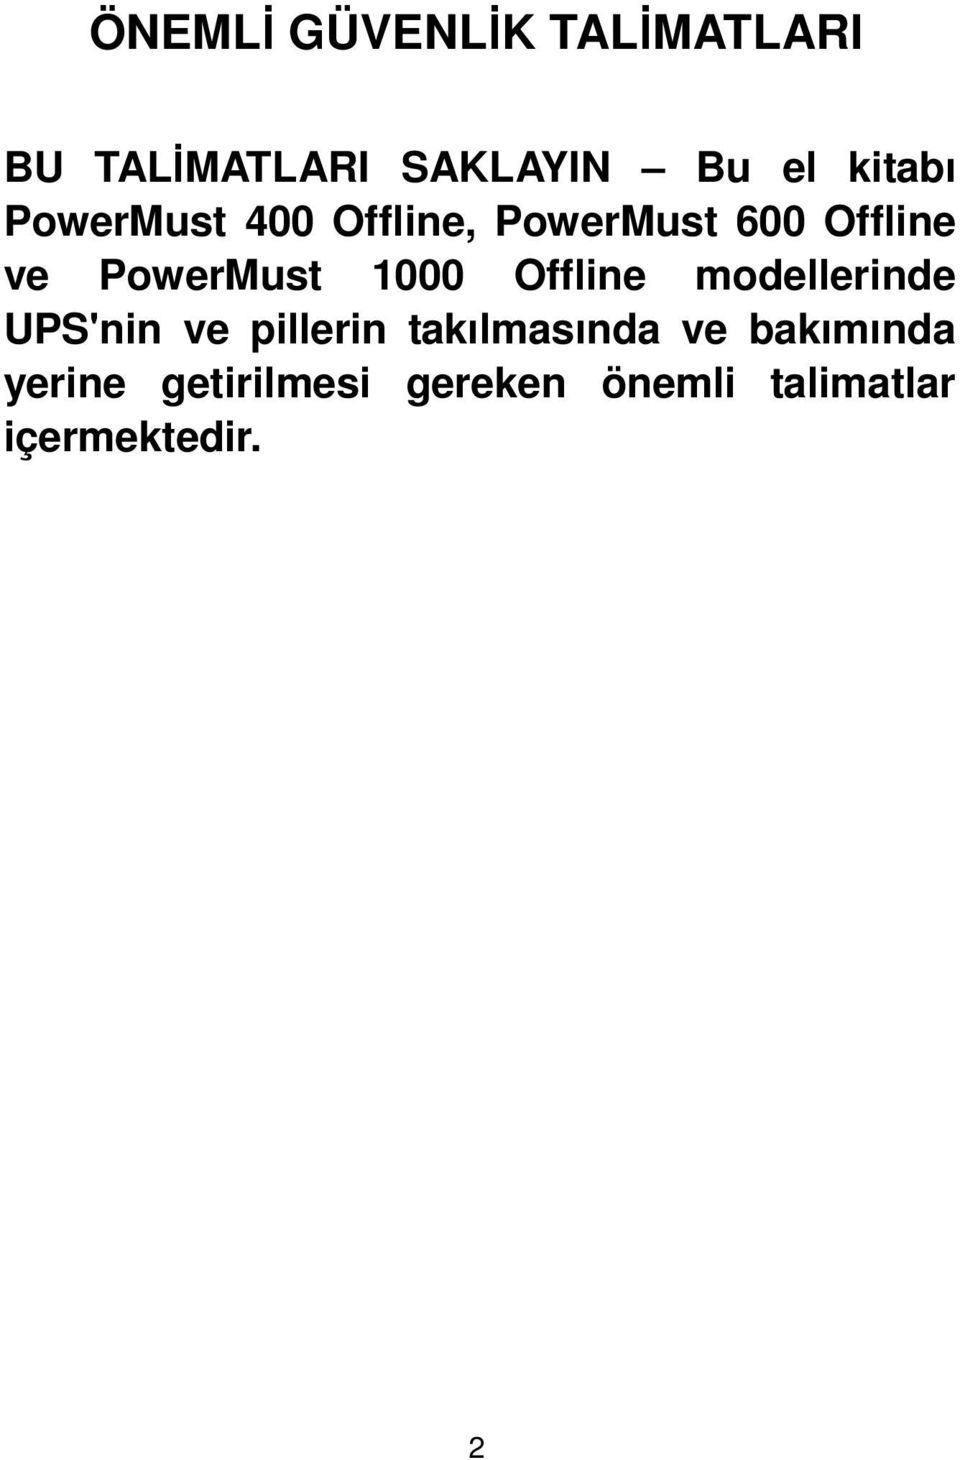 PowerMust 1000 Offline modellerinde UPS'nin ve pillerin